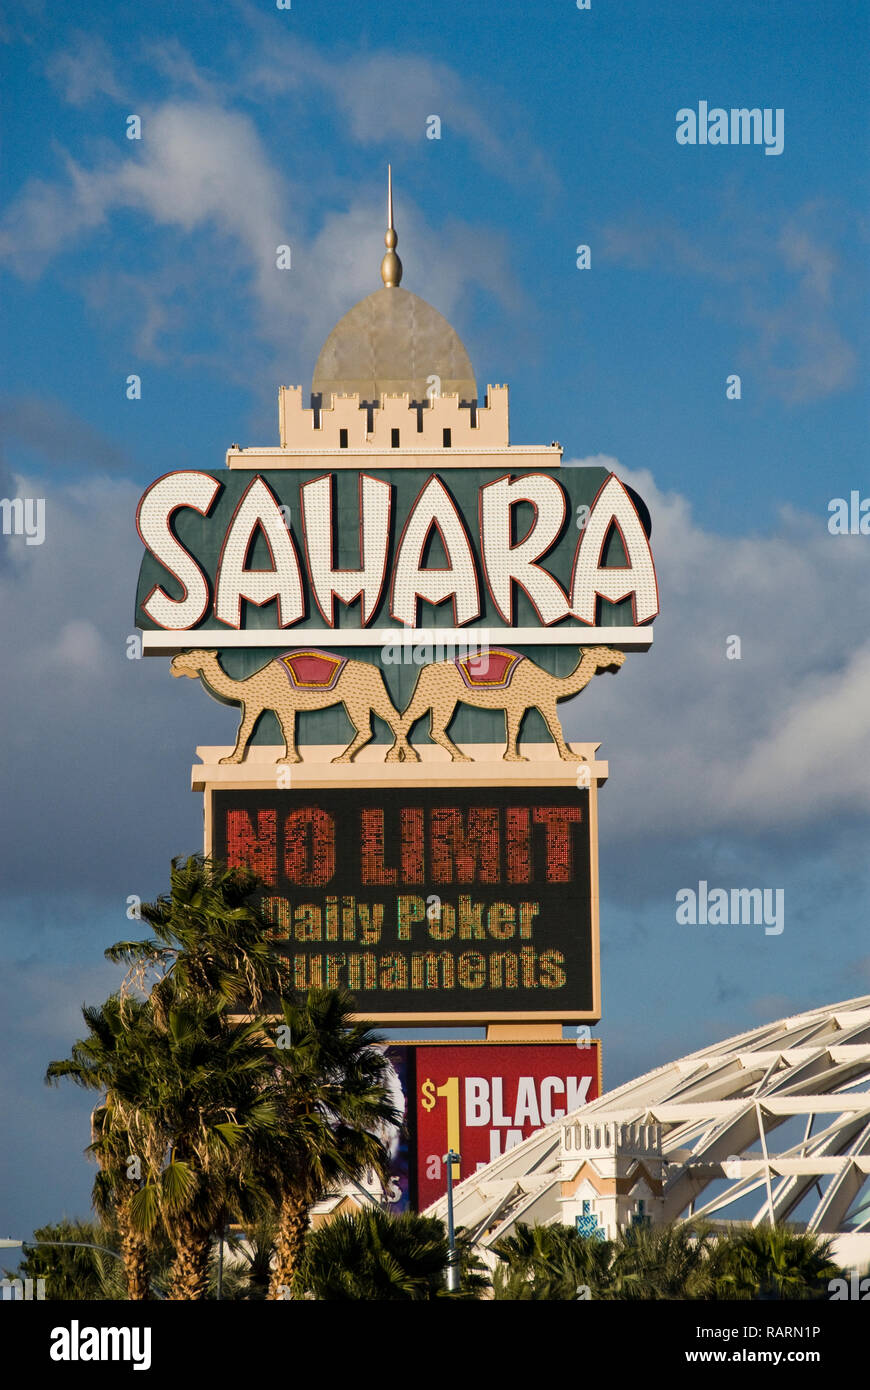 Historique Le Sahara Hotel and Casino avant qu'il a été rénové dans la SLS Hotel & Casino Las Vegas, sur le Strip de Las Vegas, Las Vegas, Nevada. Banque D'Images